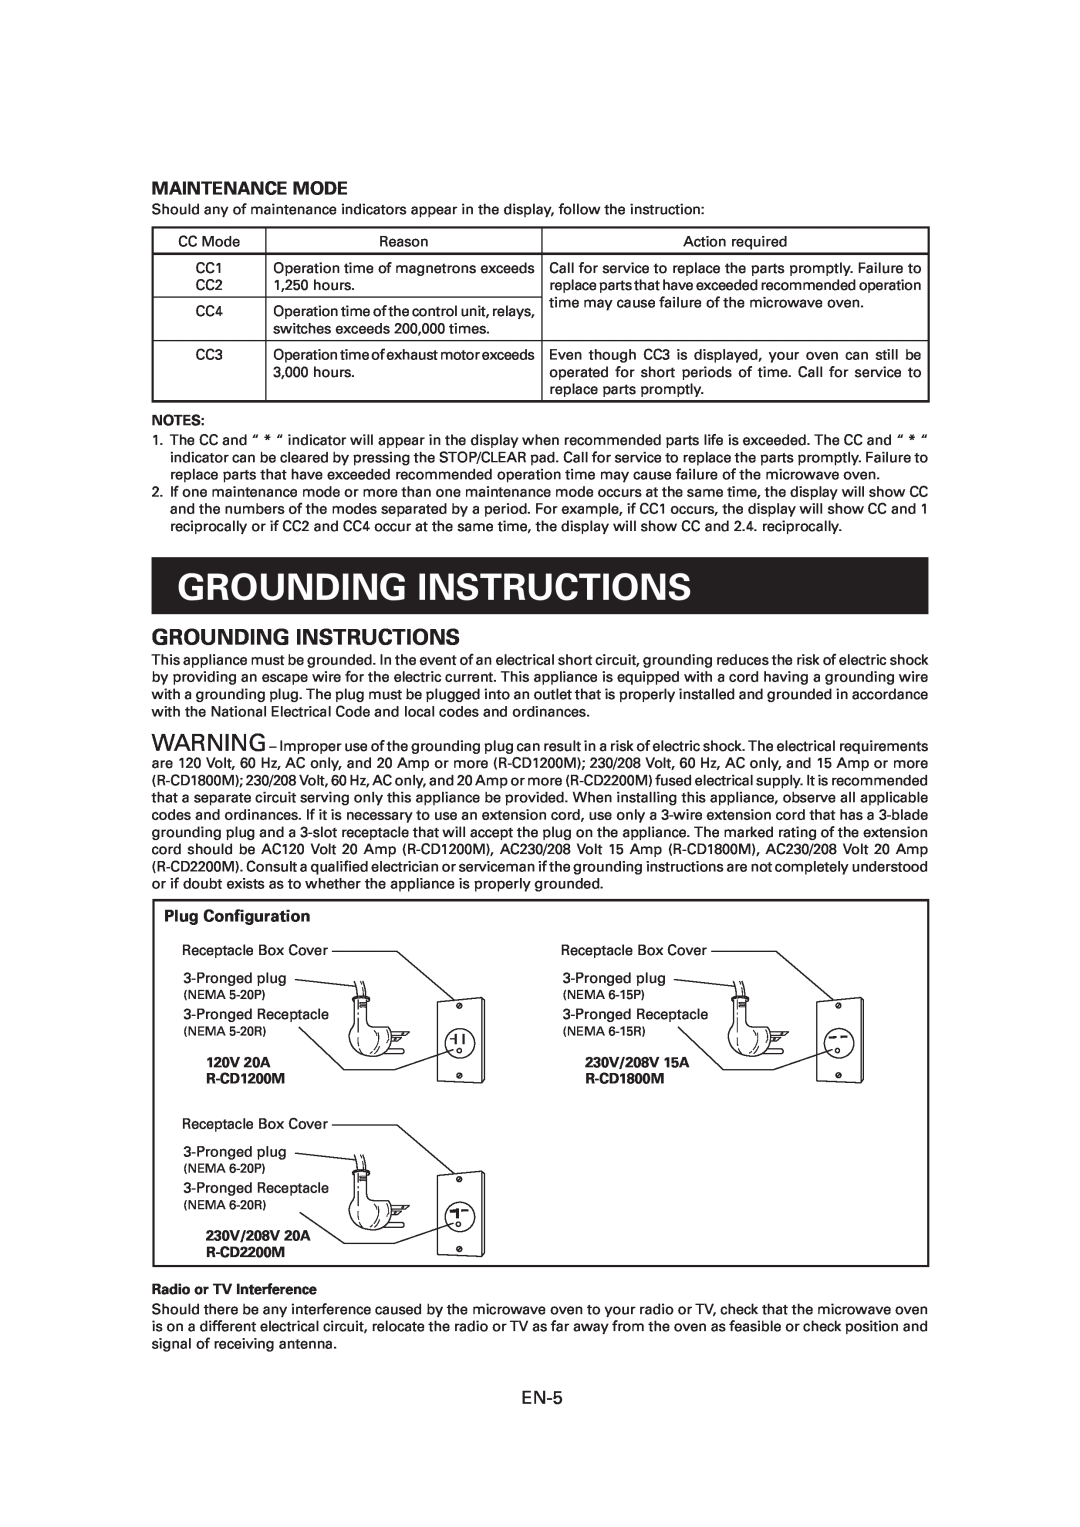 Sharp Grounding Instructions, Maintenance Mode, Plug Conﬁguration, Notes, 120V 20A R-CD1200M, 230V/208V 20A R-CD2200M 